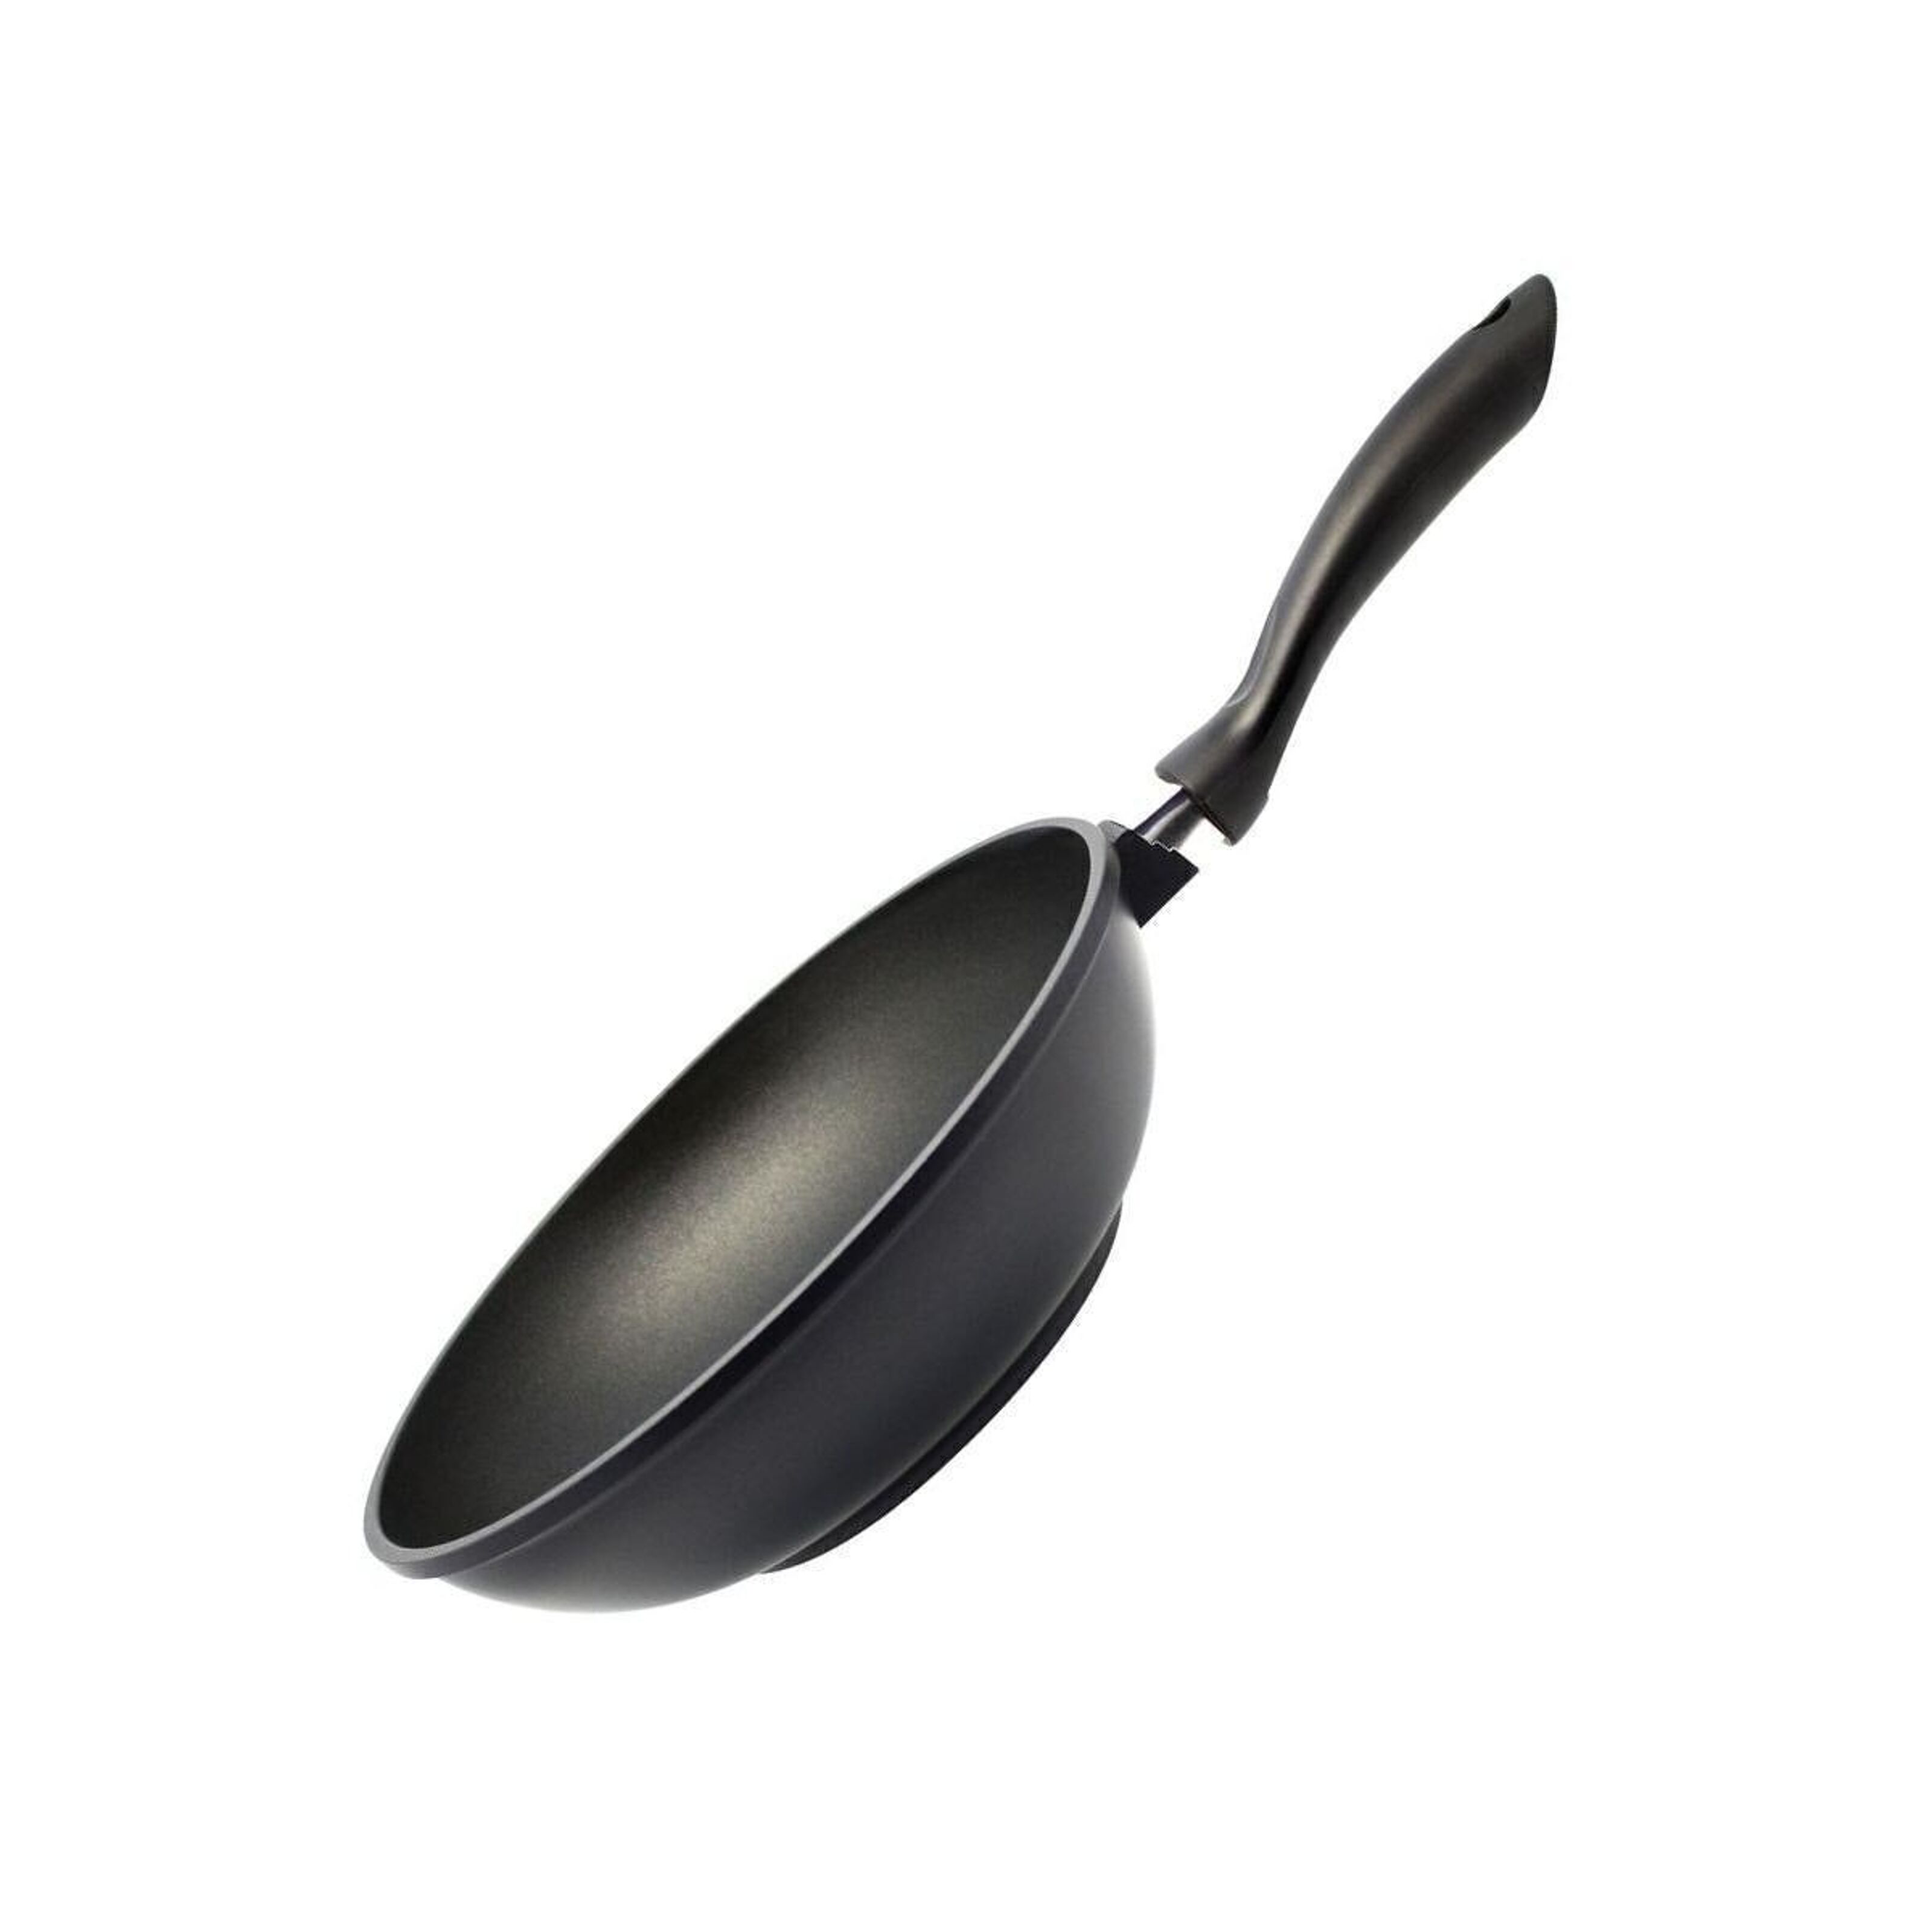 Poêle wok en aluminium avec couvercle en verre 20 cm Elo Smart life